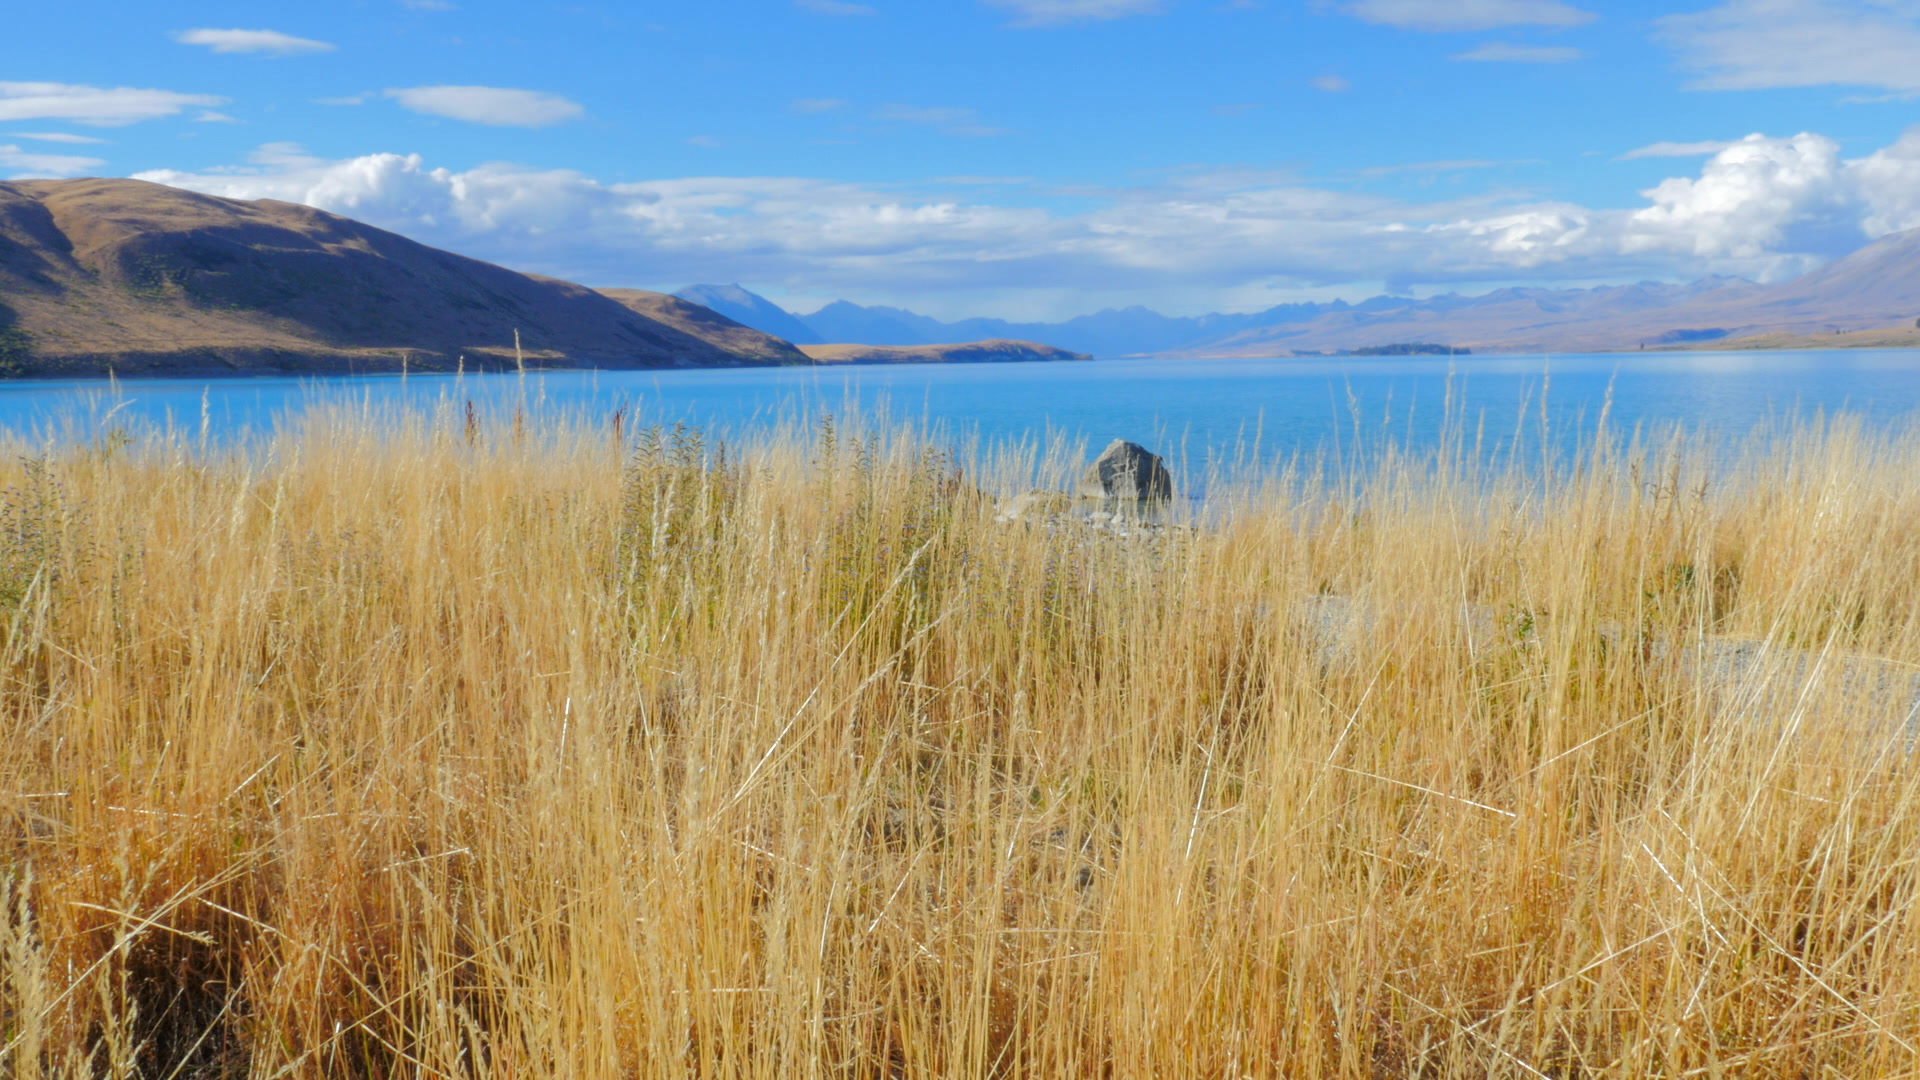 Lake Tekapo - New Zealand